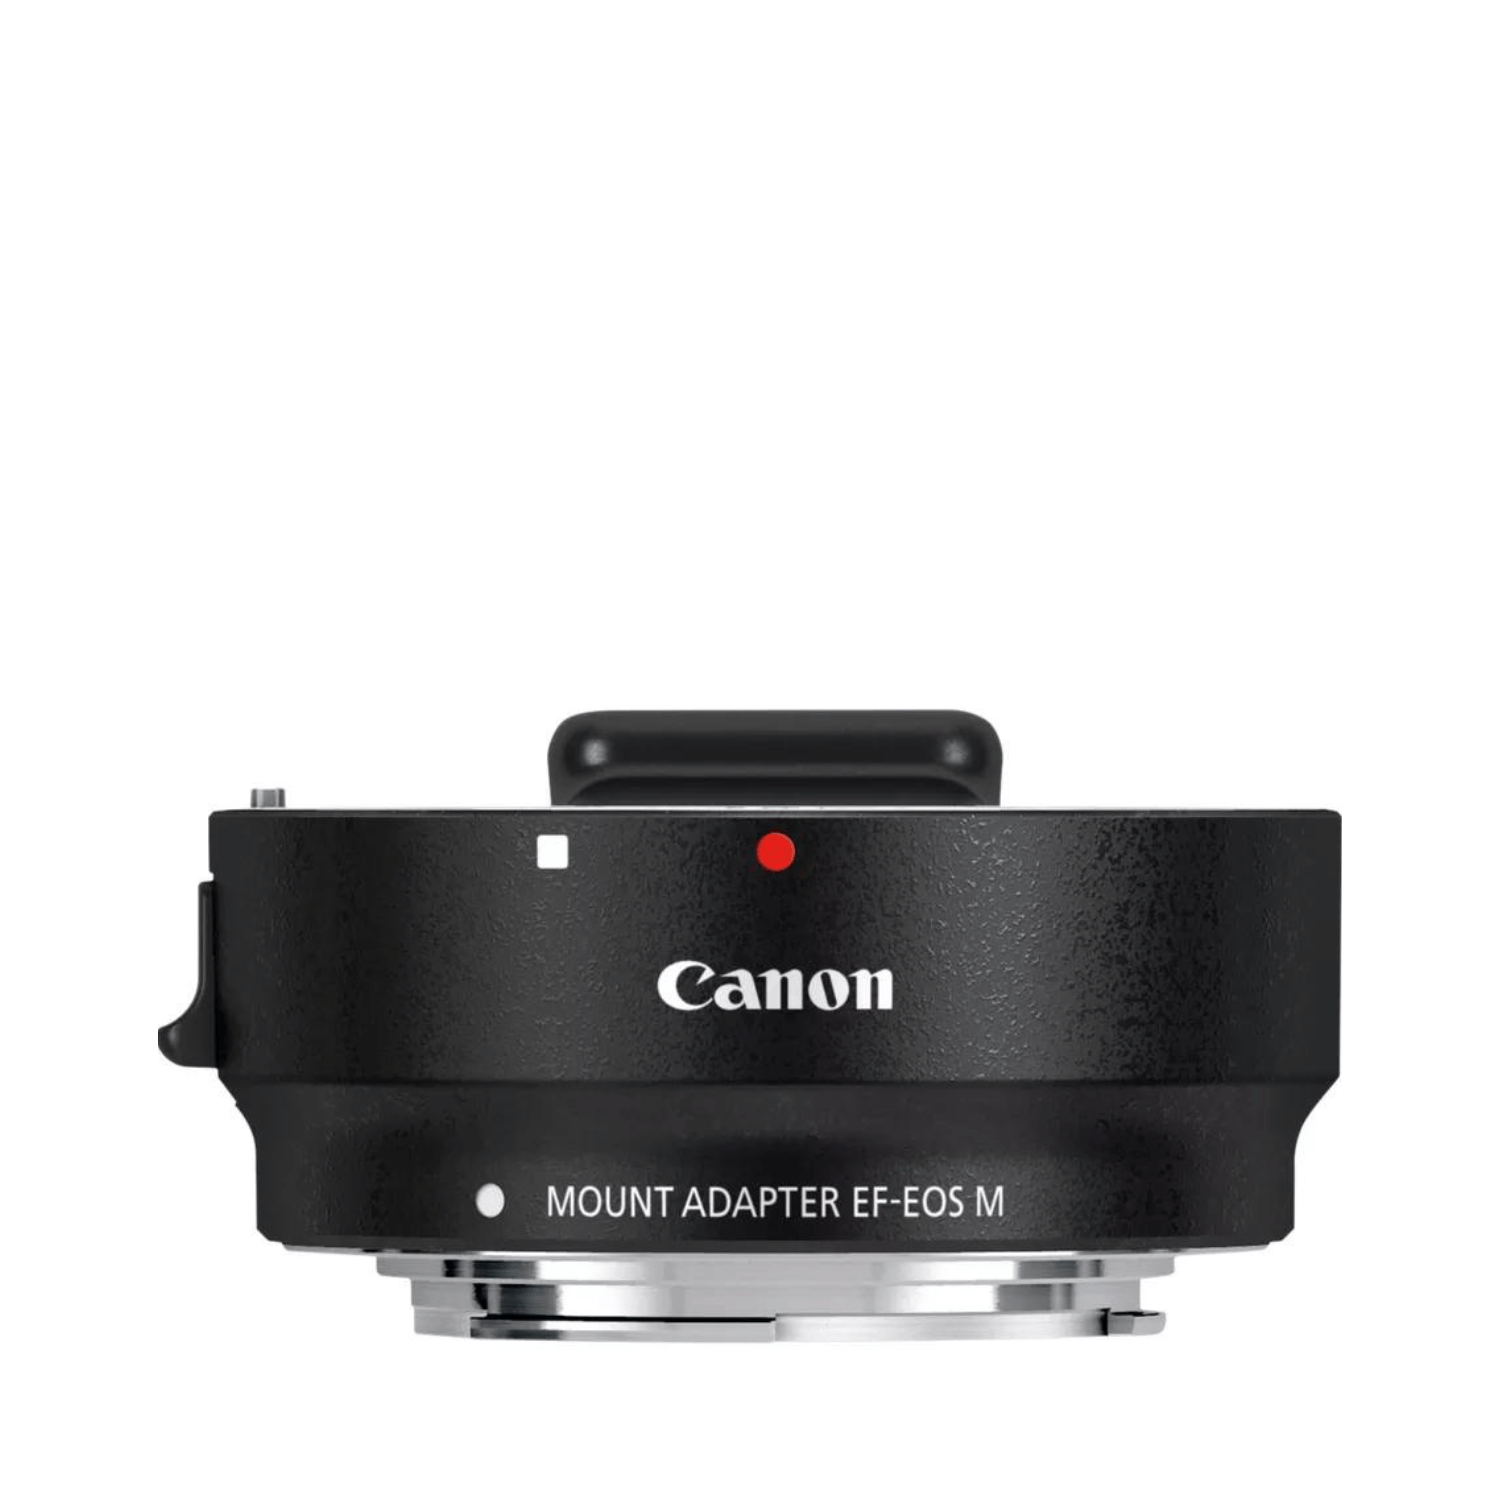 Canon EF Mount Adapter EF-EOS M -Gar. Canon Italia- Cine Sud è 47 anni sul mercato!